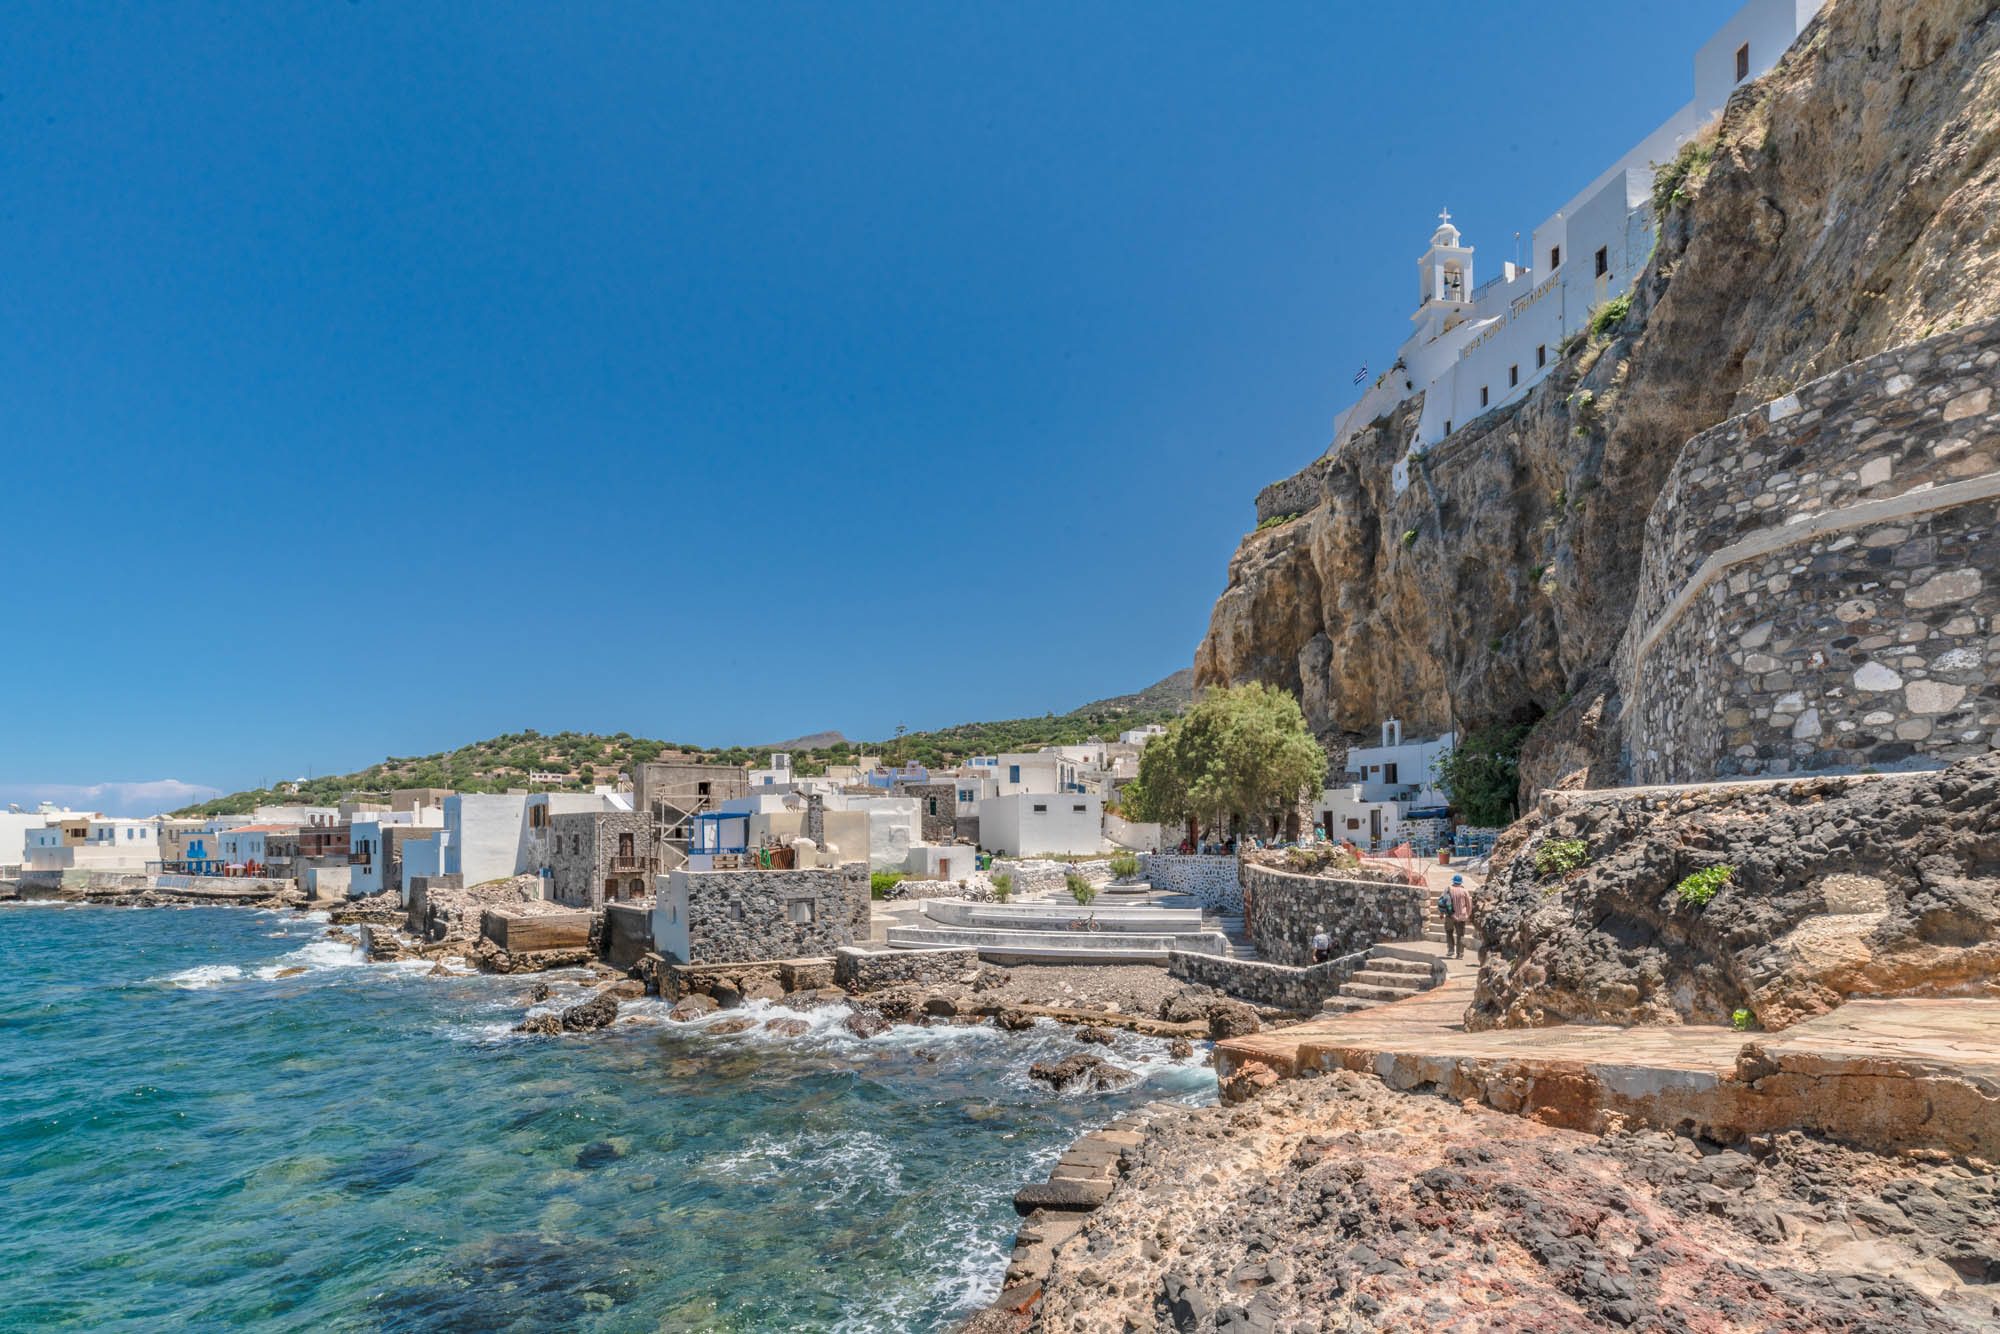 Widok z plaży na Port w Mandraki i górujący nad nim klasztor Panagia Spiliani, Nisyros